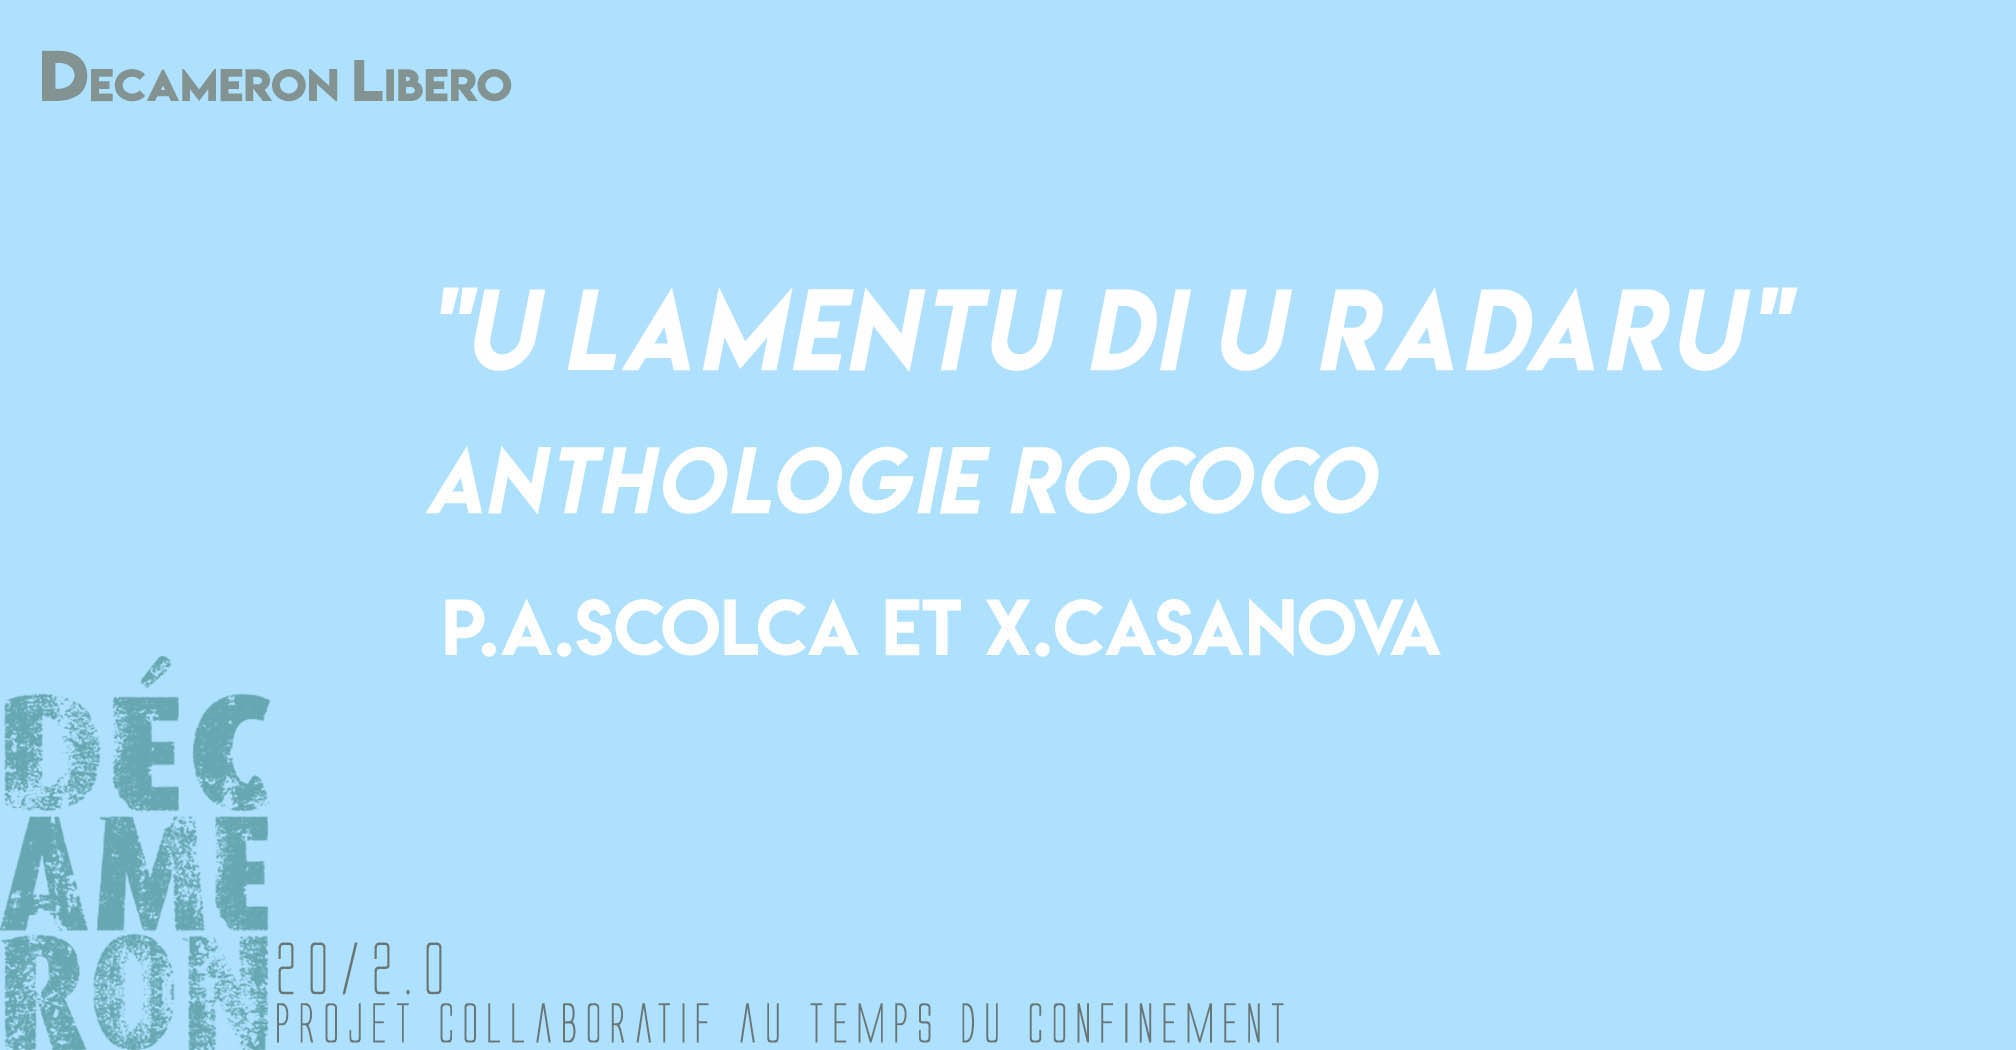 U lamentu di u radaru - Anthologie RoCoCo - Scolca & Casanova